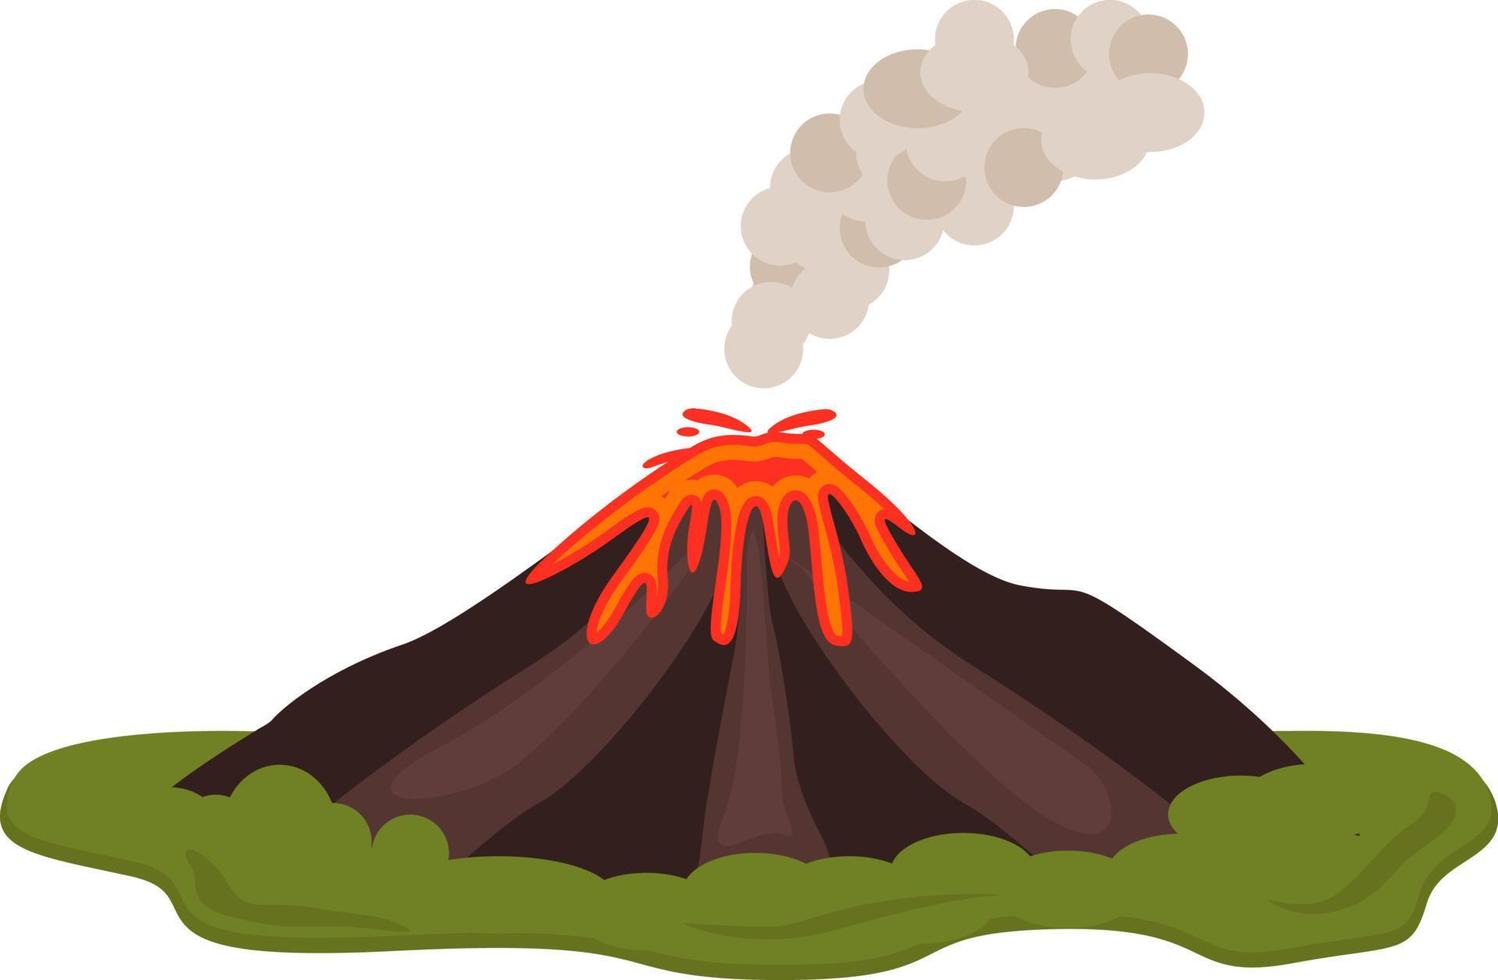 gammal vulkan ,illustration, vektor på vit bakgrund.